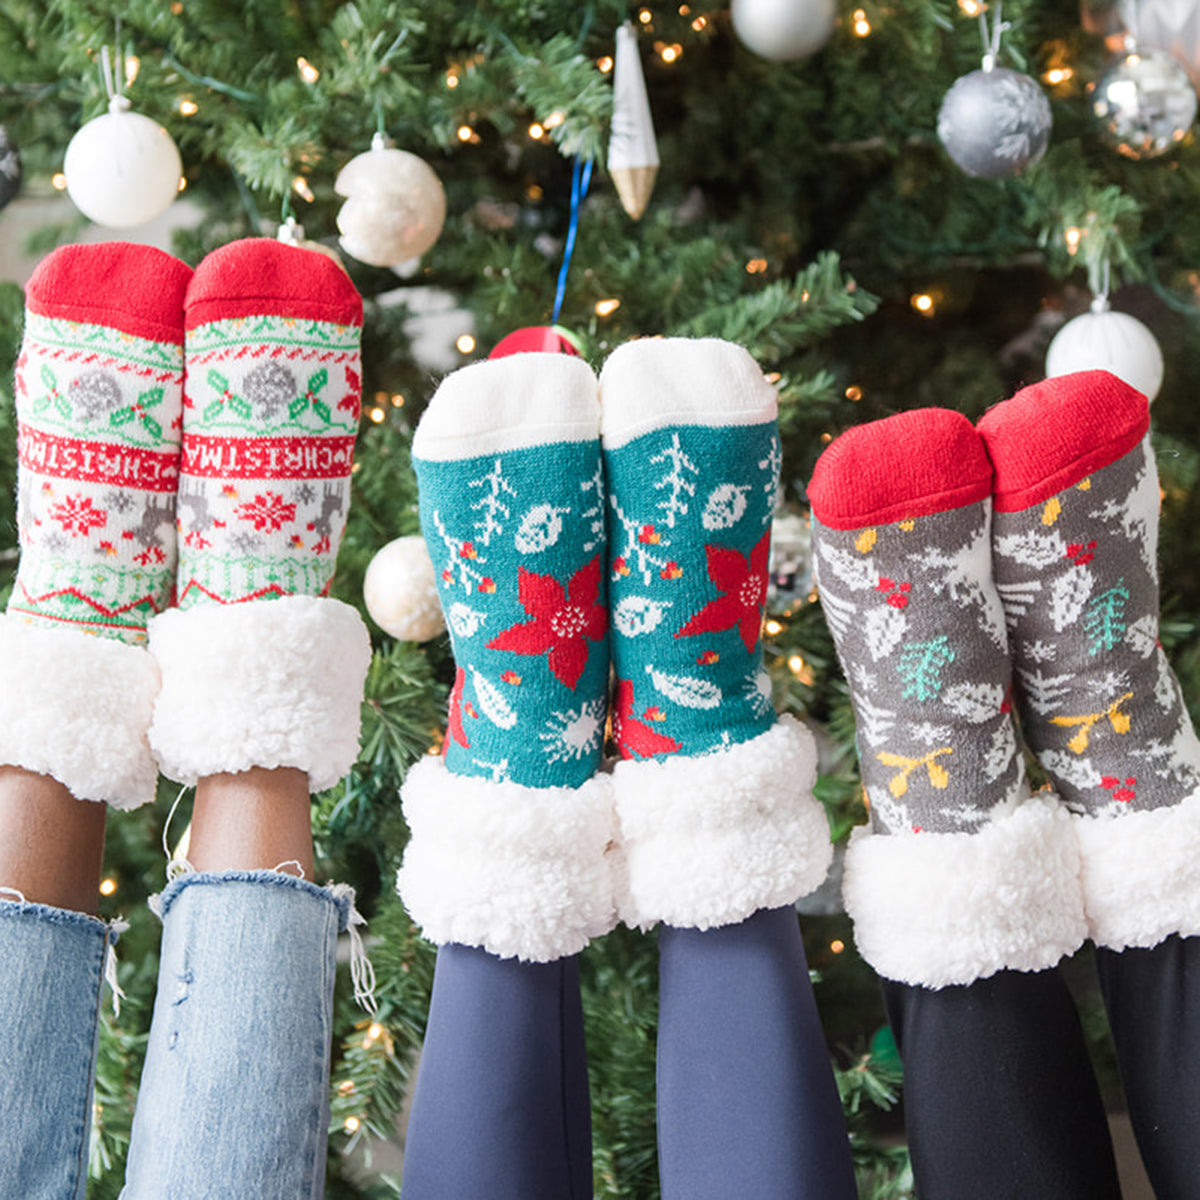 Classic Slipper Socks | Christmas Holly